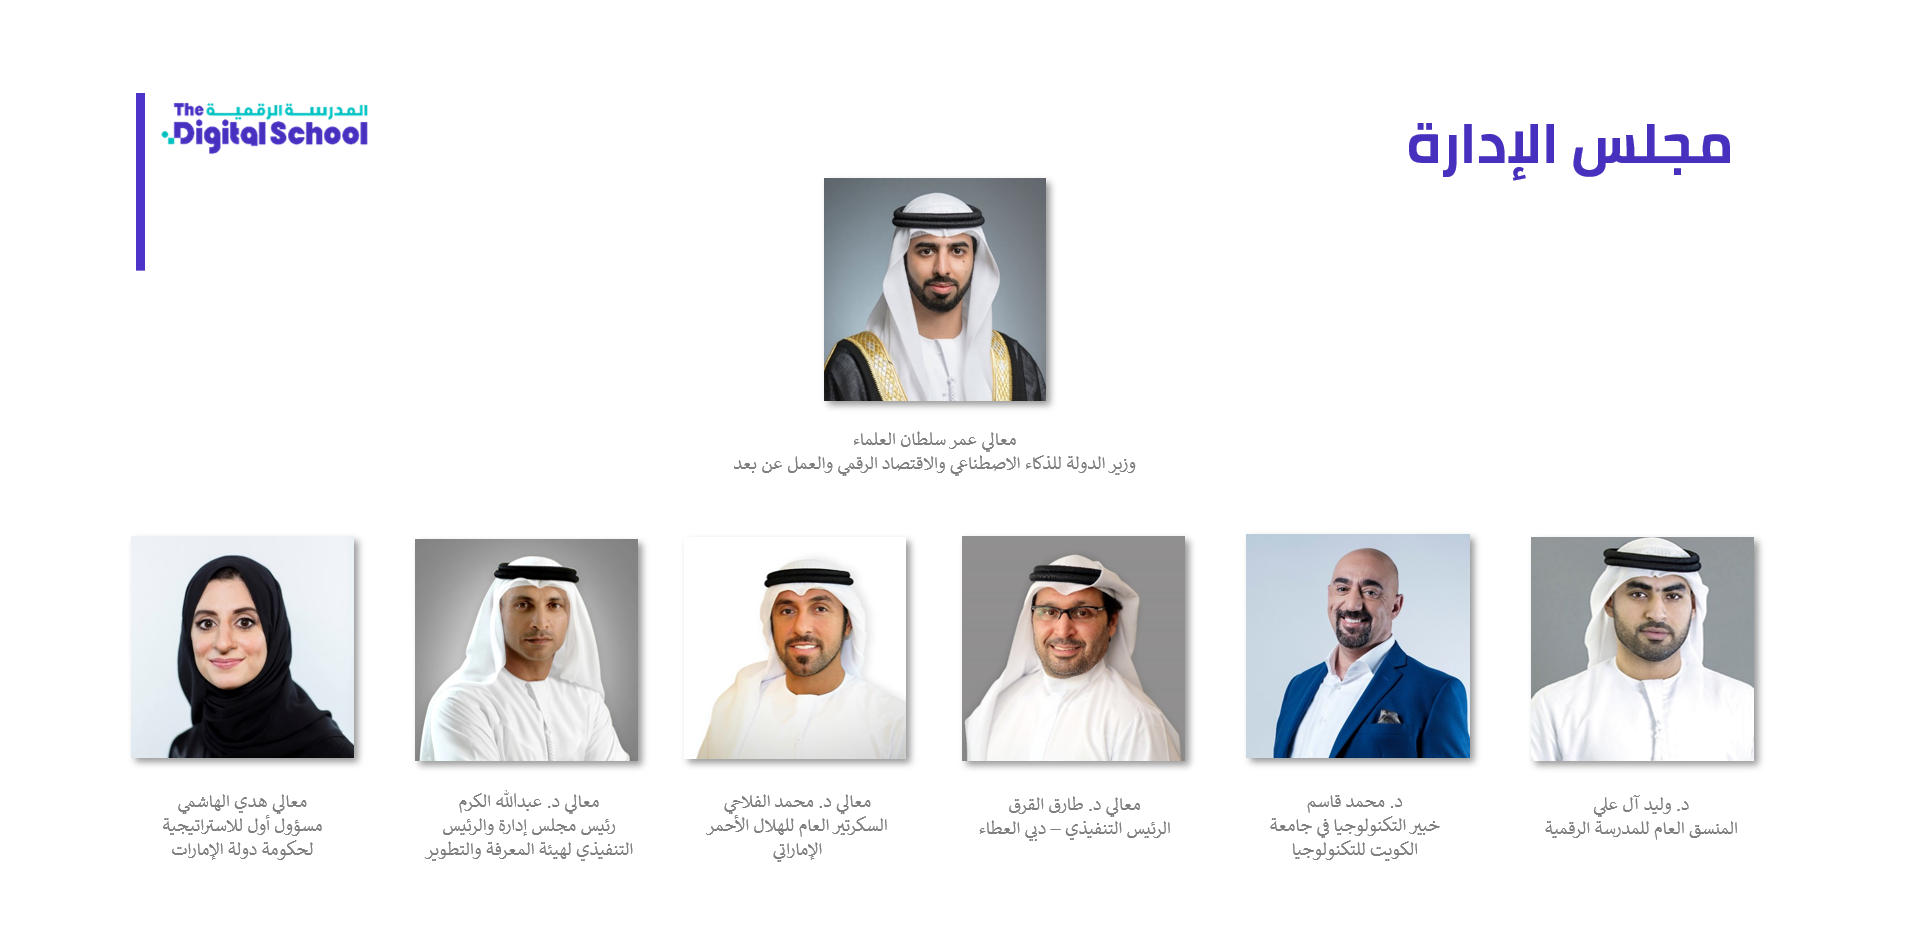 Mohammed bin Rashid forms the Board of Directors of the “Digital School” headed by HE Omar Al Olama